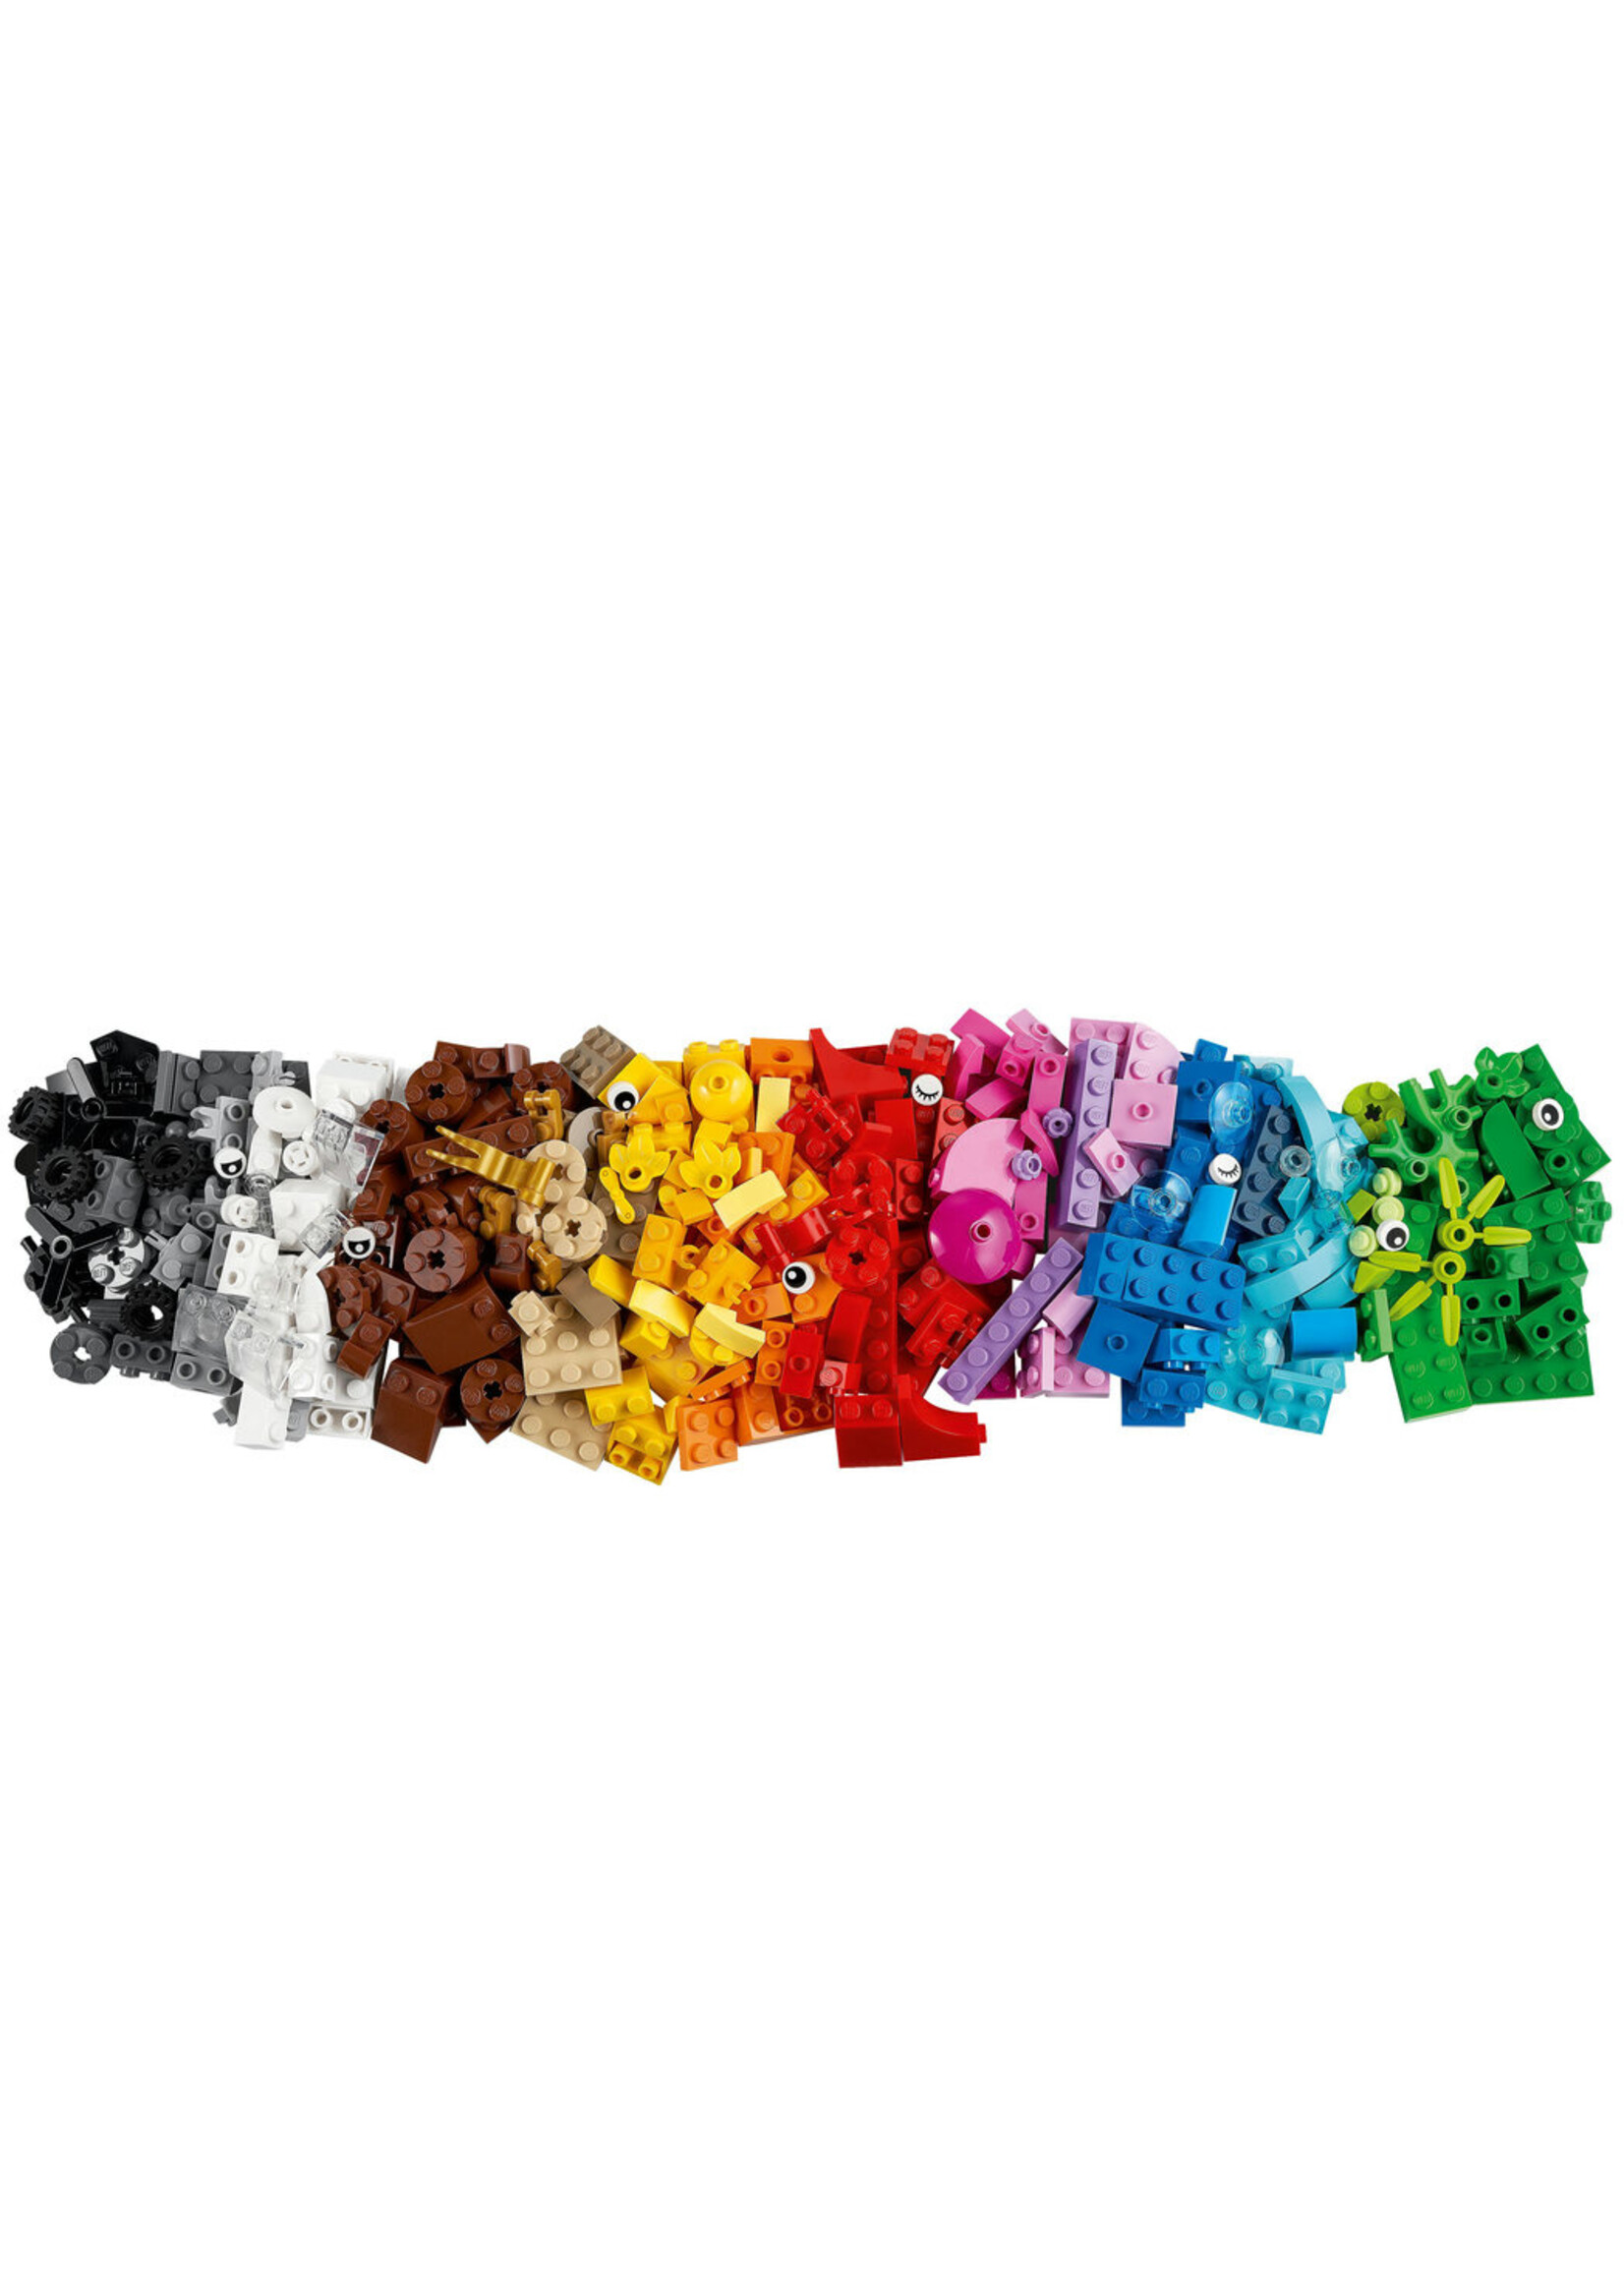 LEGO 11018 - Creative Ocean Fun